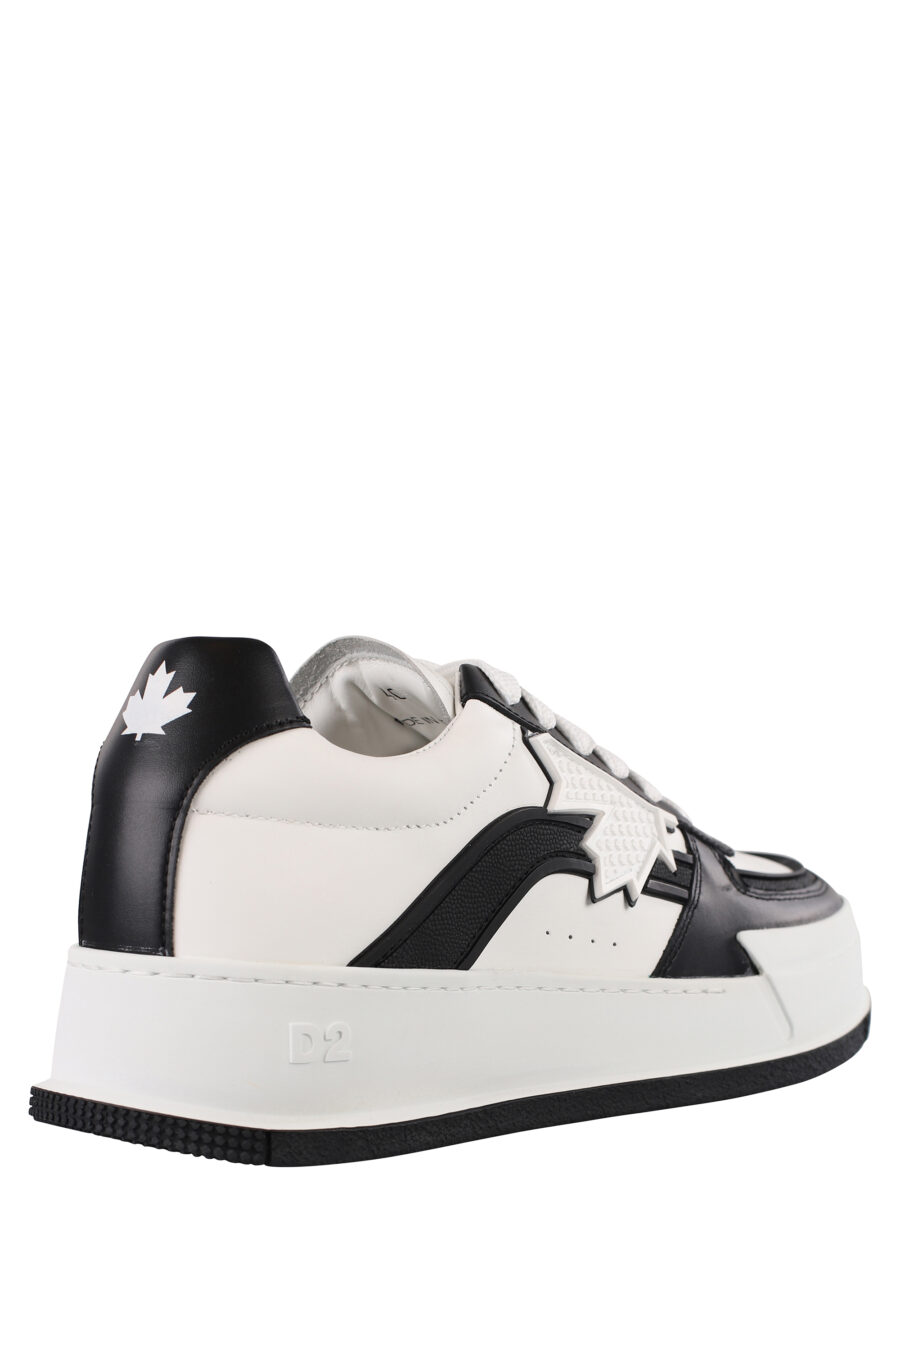 Zapatillas blancas con negro y hoja blanca - IMG 1211